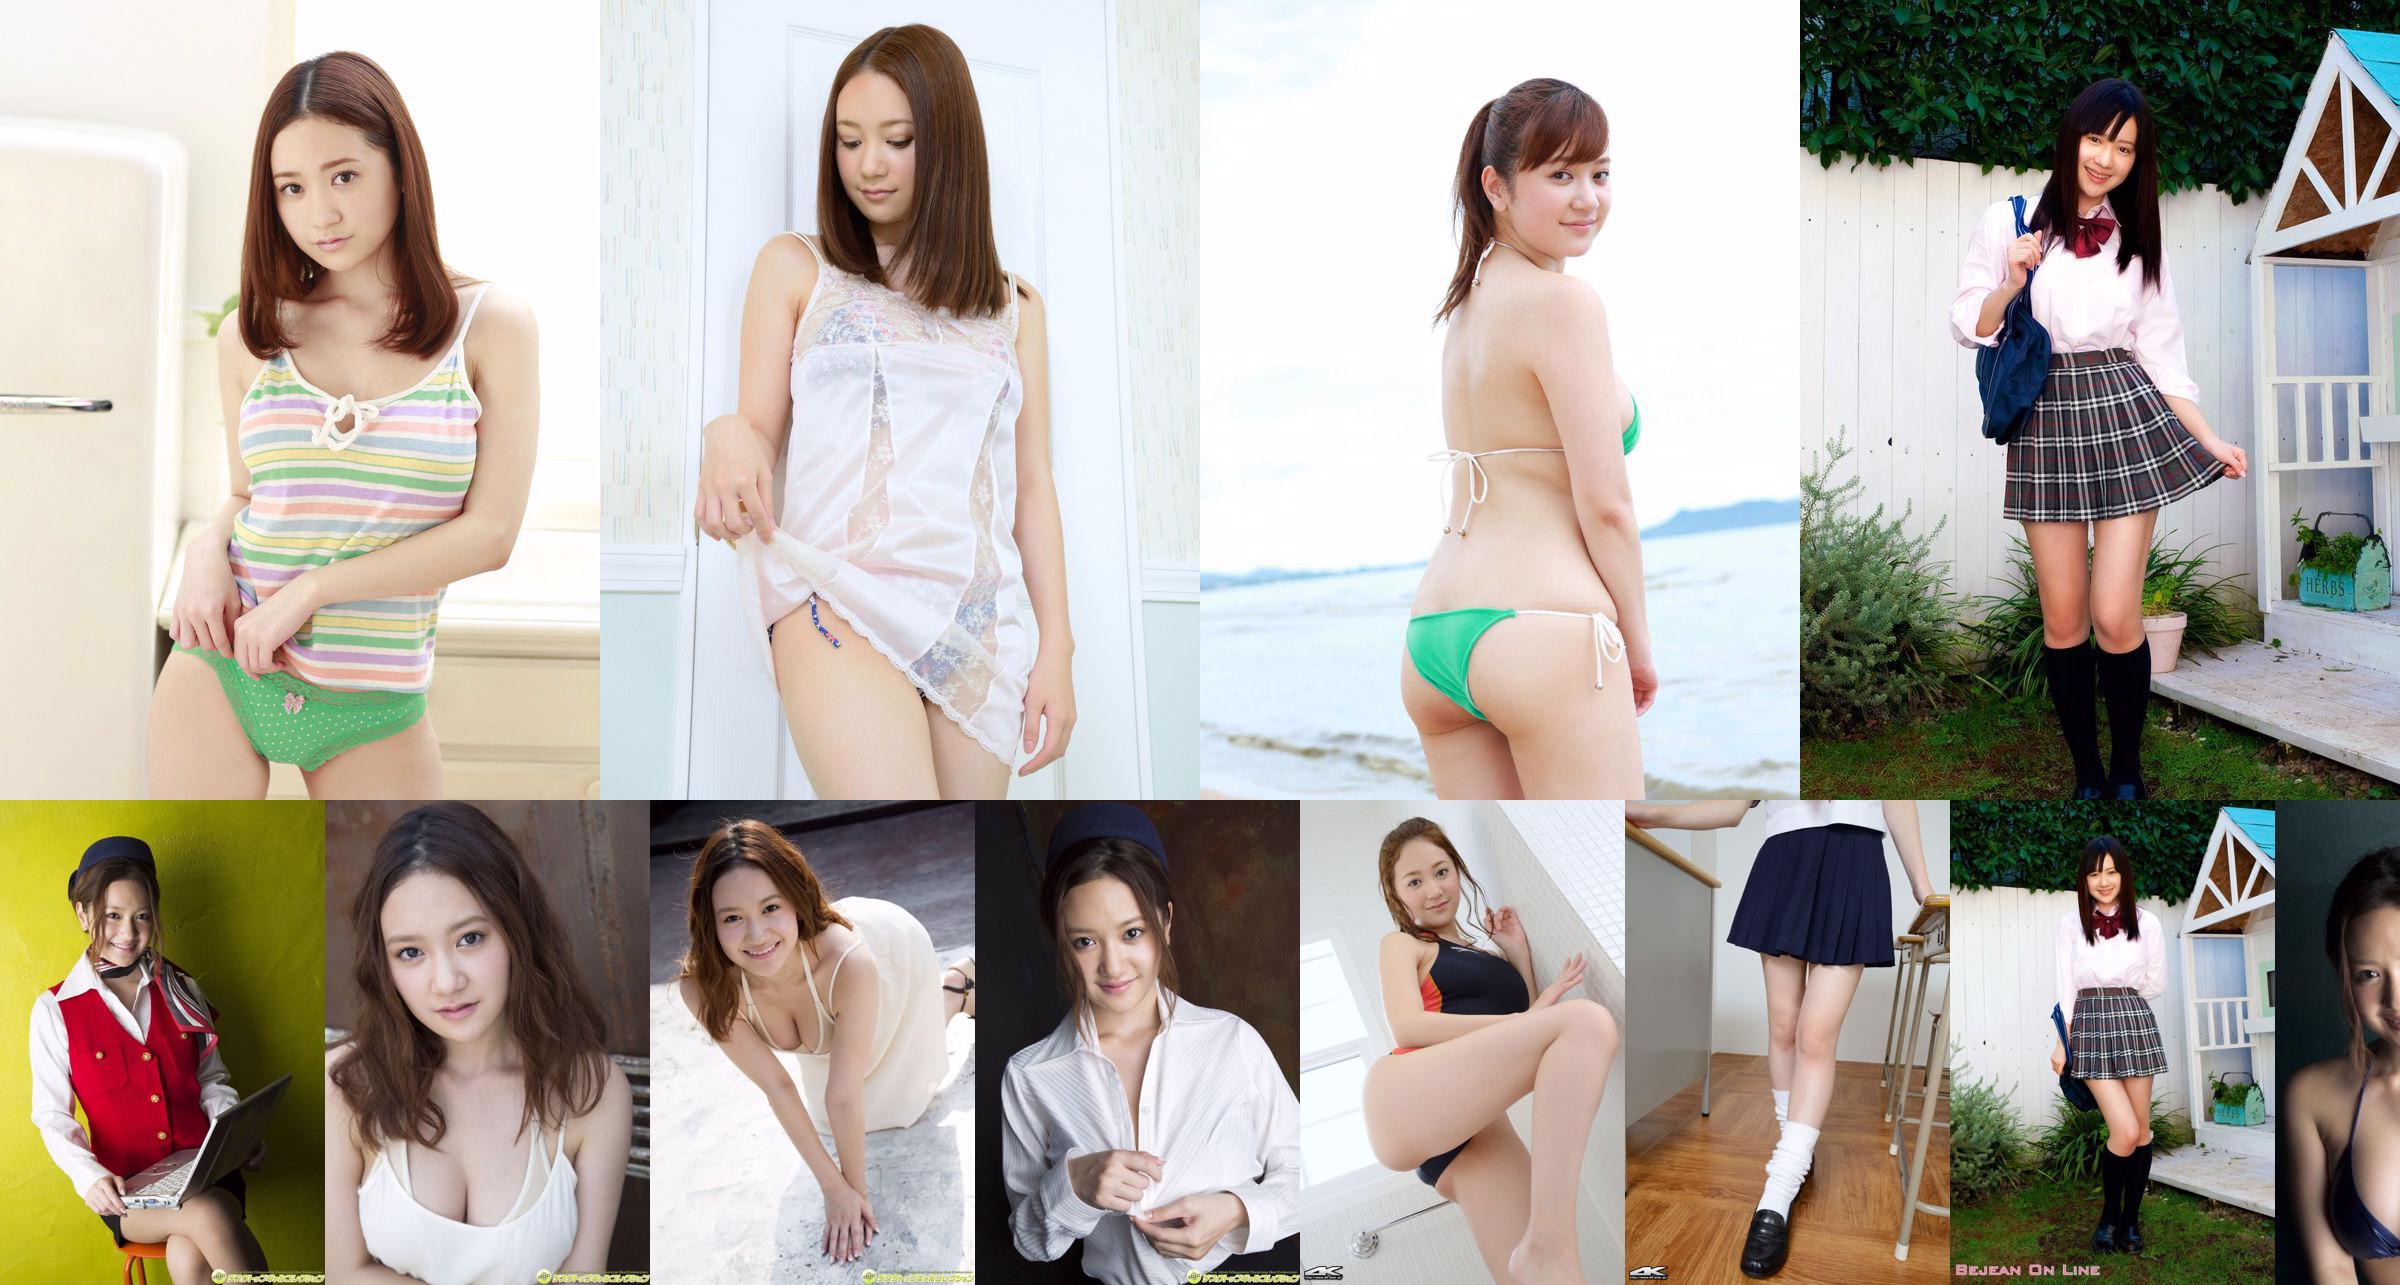 '14 Haruki Aya Asahina Yurina Yanagi Mai Asada Kurumi Takahashi Saki Ninomiya Sayuri Anzu [Tygodniowy Playboy] 2014 nr 50 zdjęcie No.126e85 Strona 1